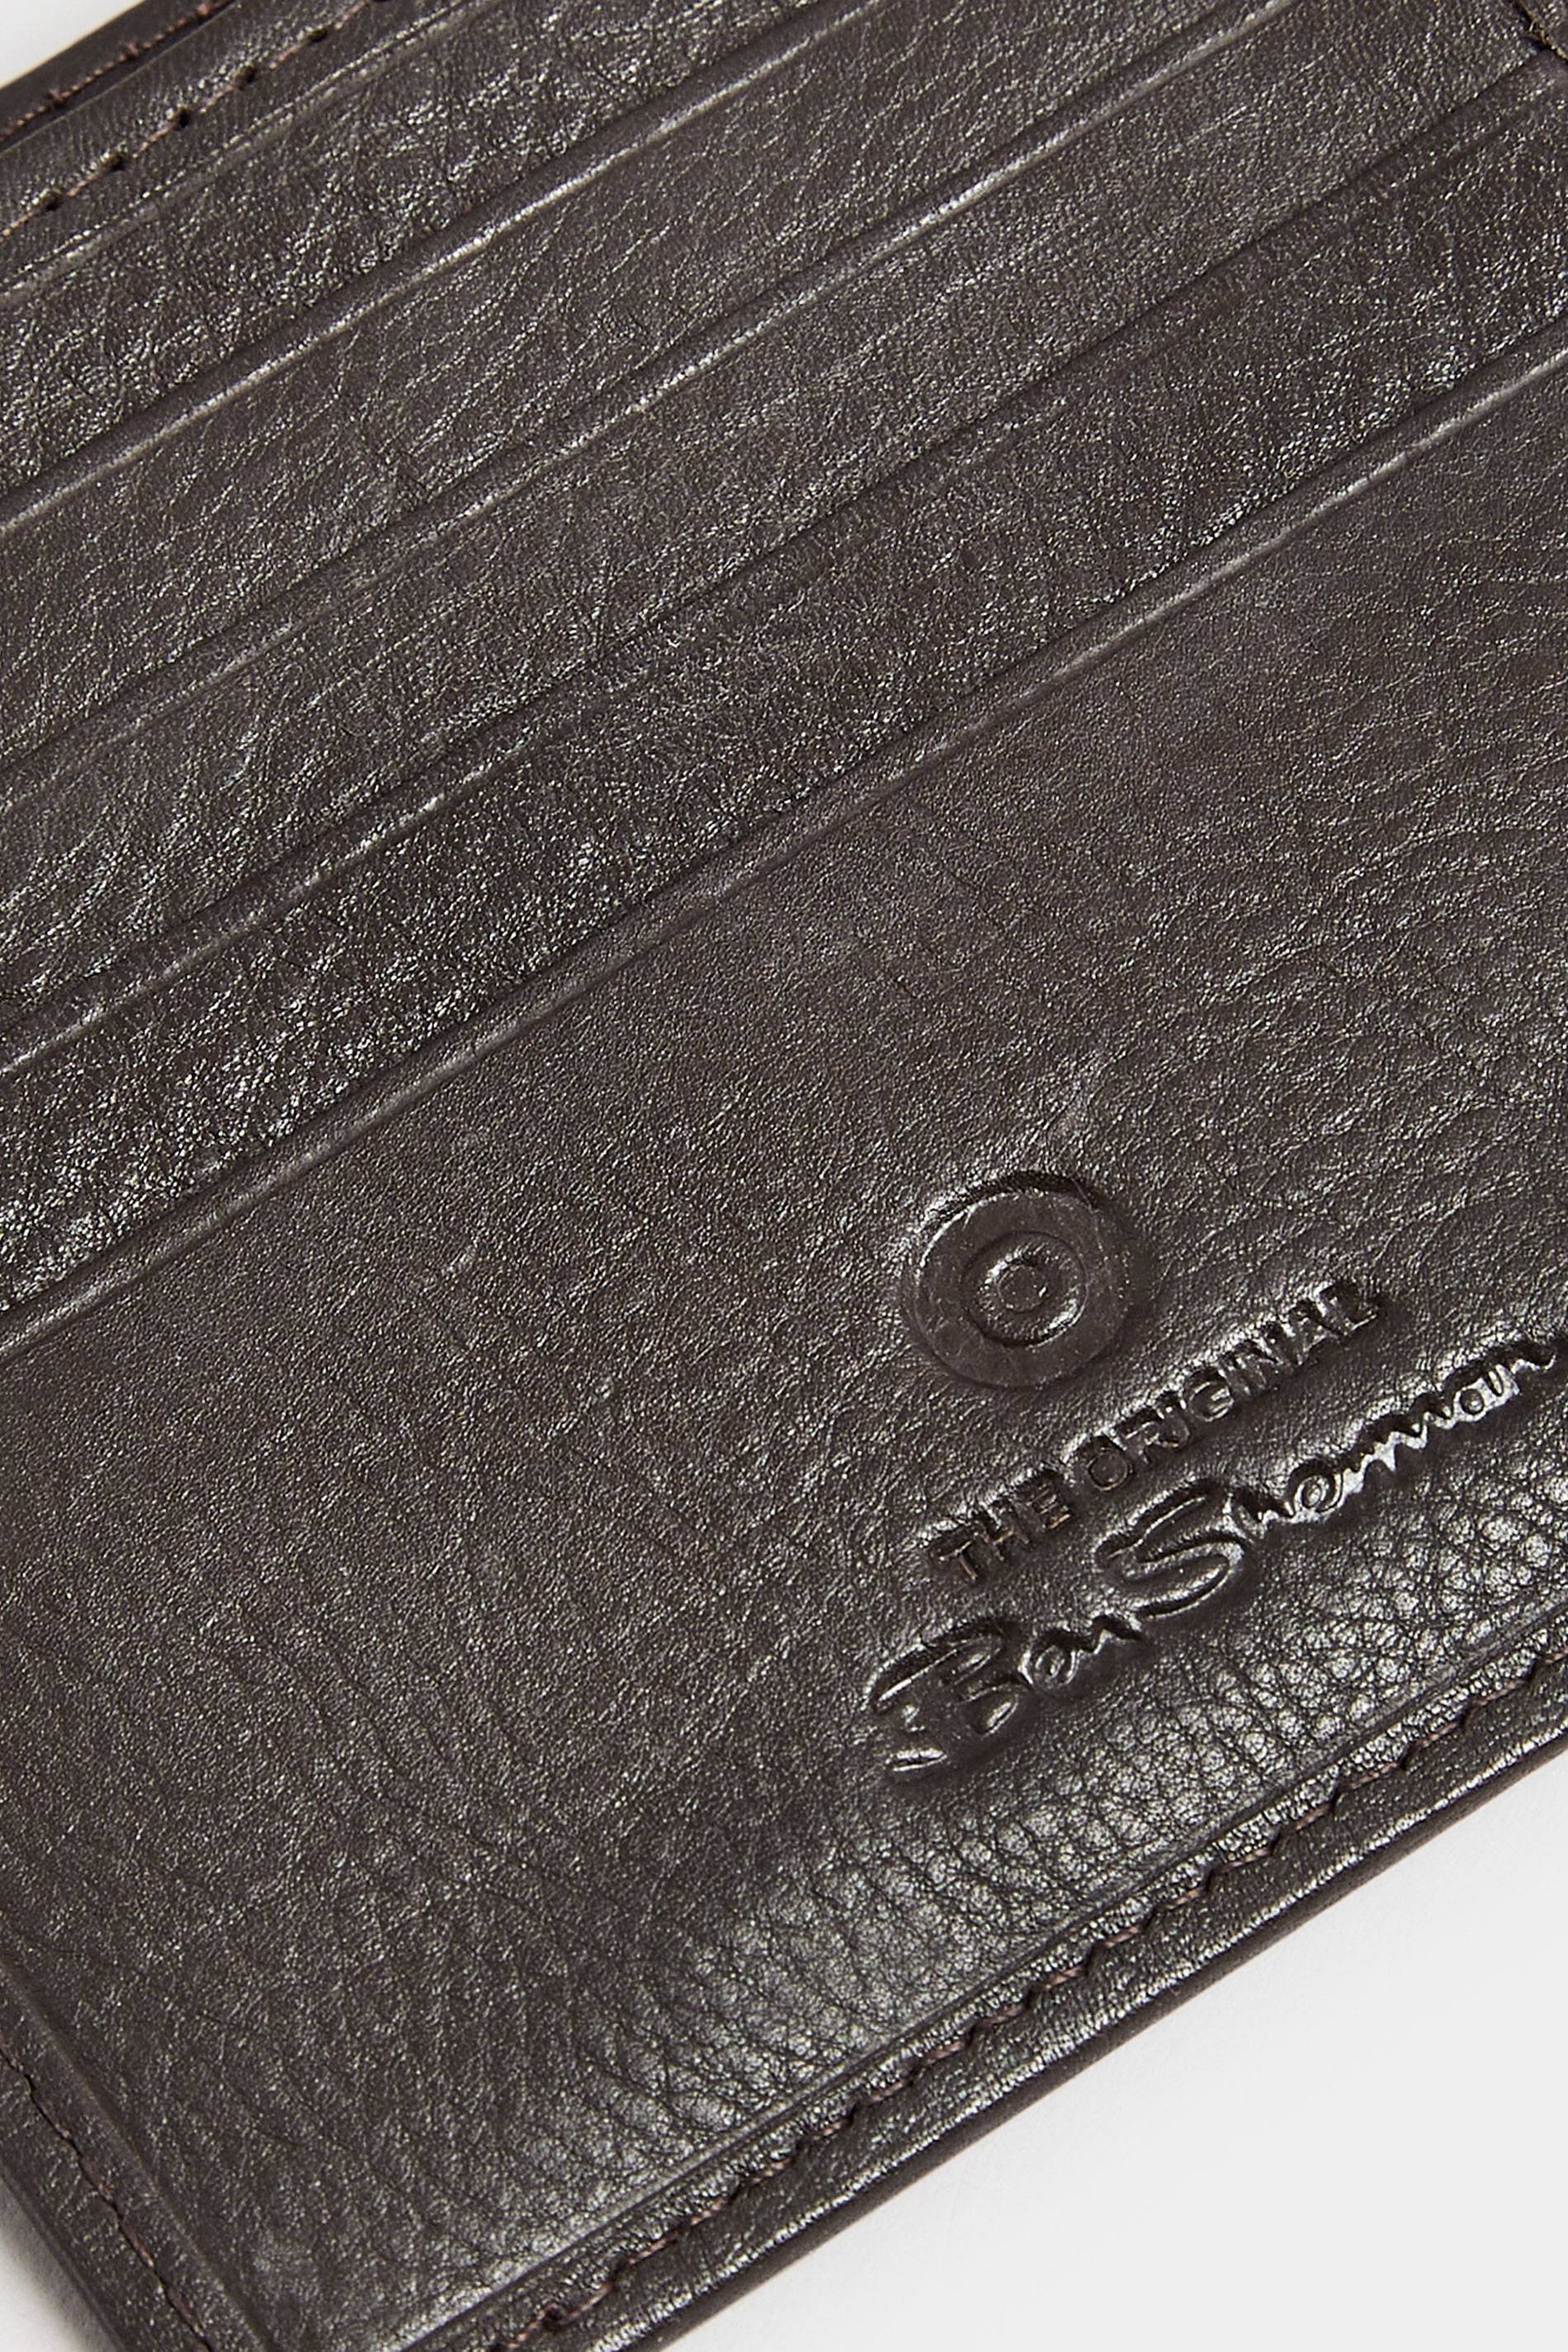 BEN SHERMAN Brown Leather Bi-Fold Wallet 3